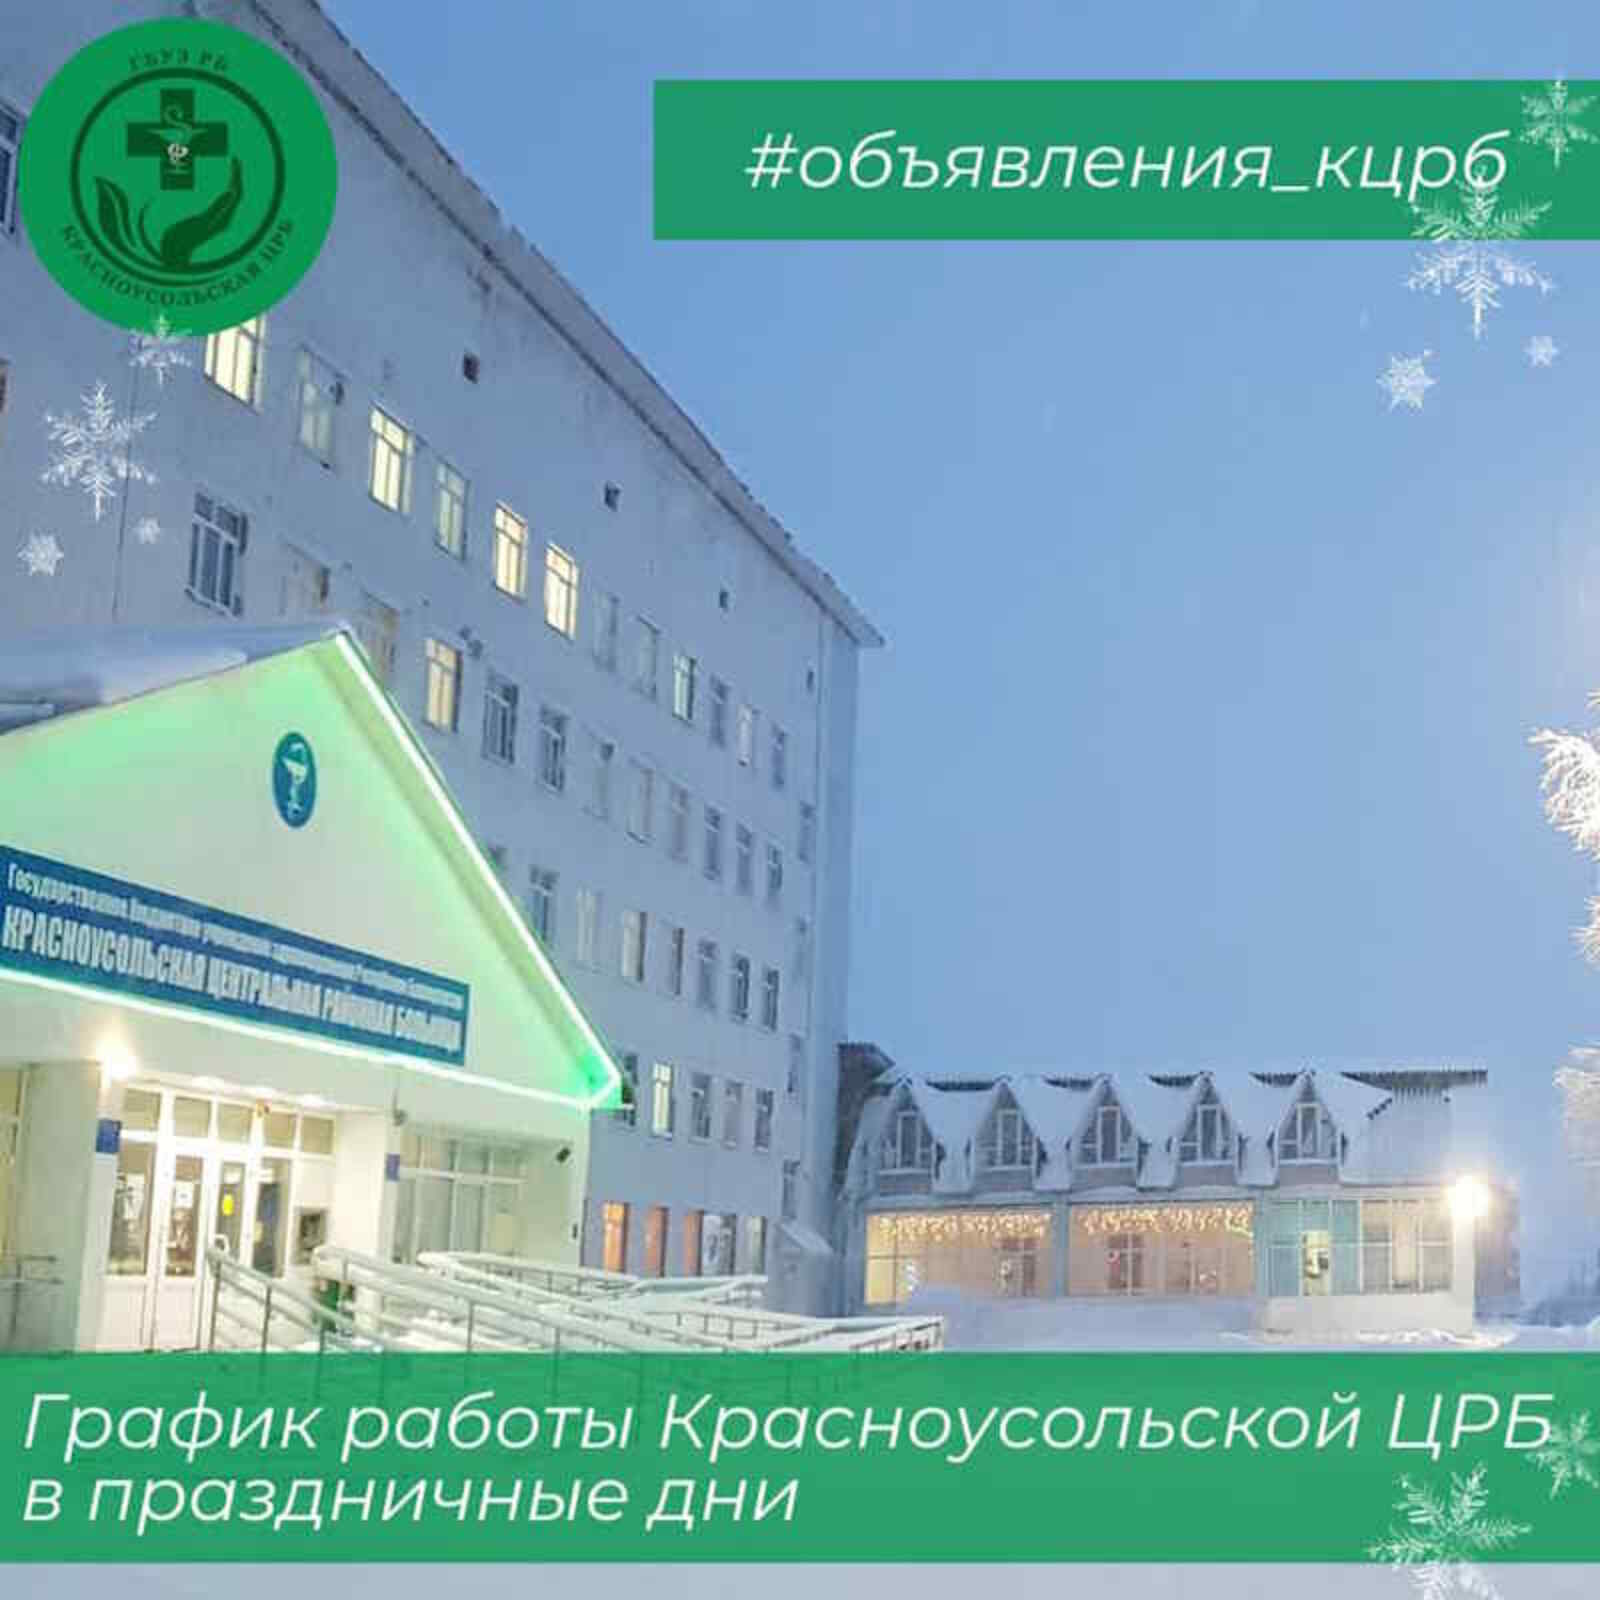 Режим работы Красноусольской ЦРБ в новогодние праздники